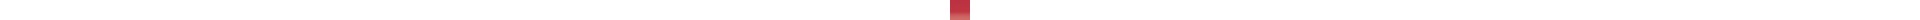 Crayon de couleur DERWENT Inktense DERWENT Inktense:0510-rouge cerise